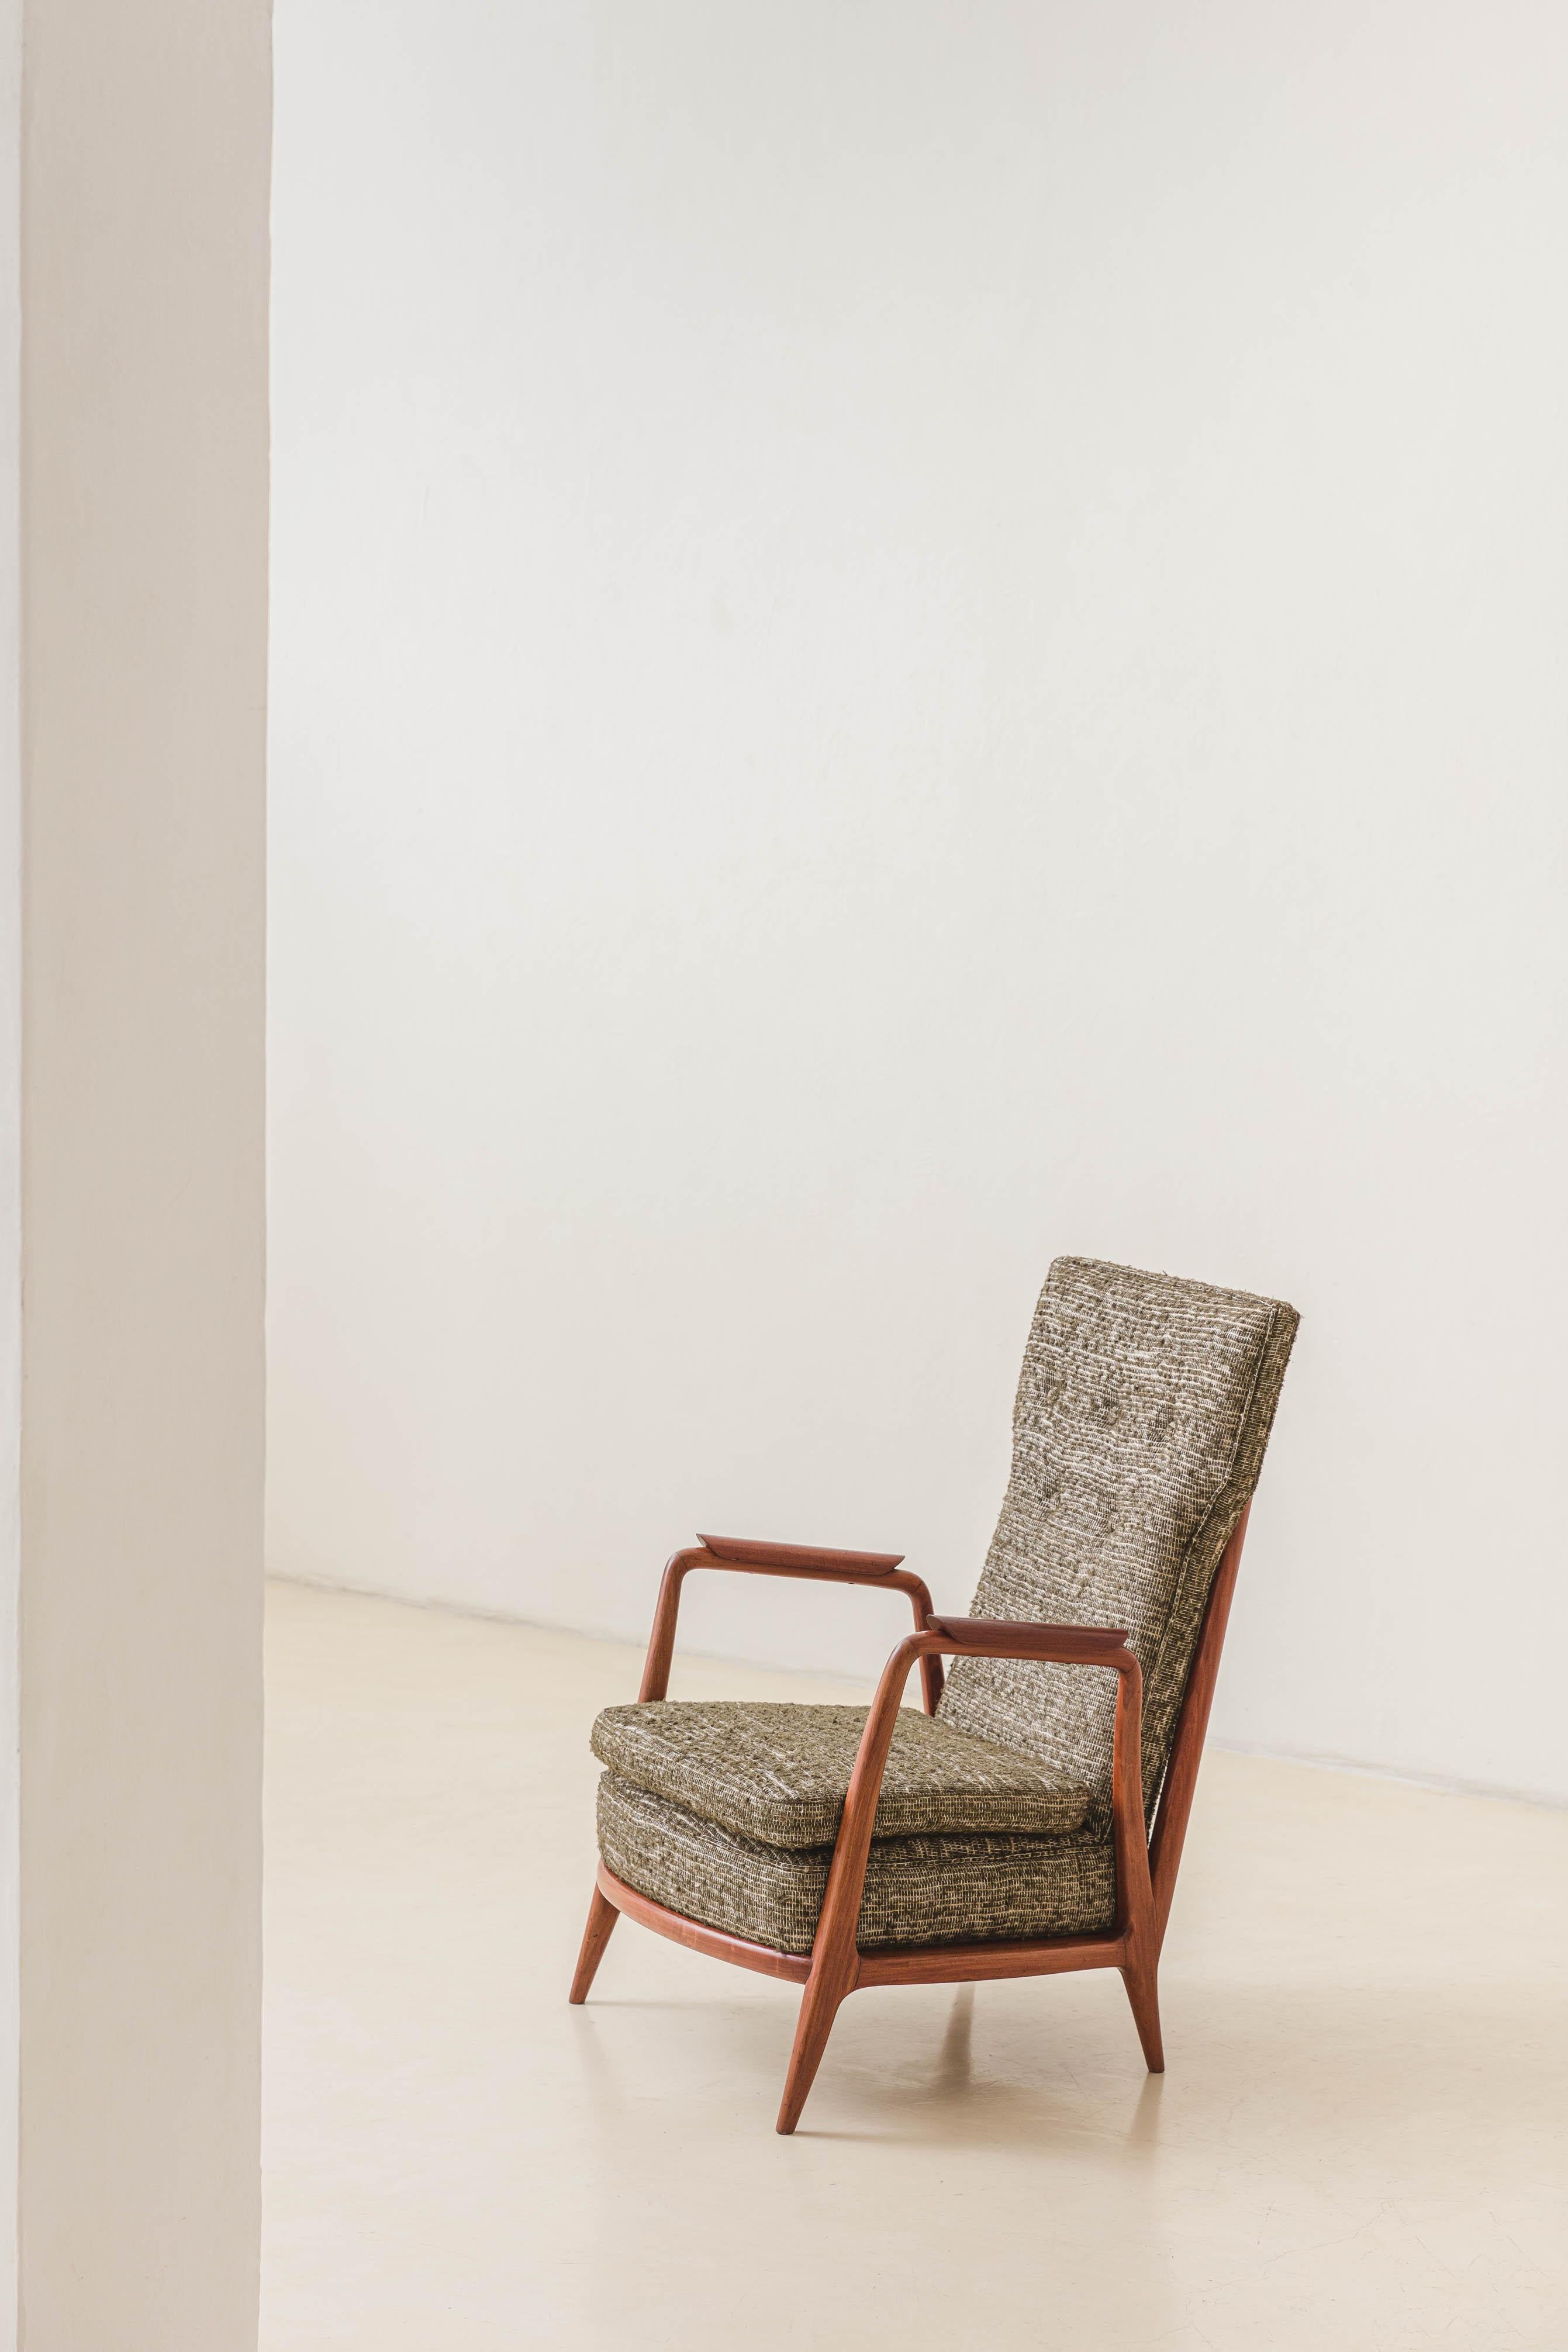 Ce fauteuil en Caviuna massif avec de hauts dossiers a été conçu par Giuseppe Scapinelli (1911-1982) dans les années 1950. La pièce est dotée de dossiers à lattes avec de fines tiges verticales et d'un rembourrage confortable avec un tissu sur